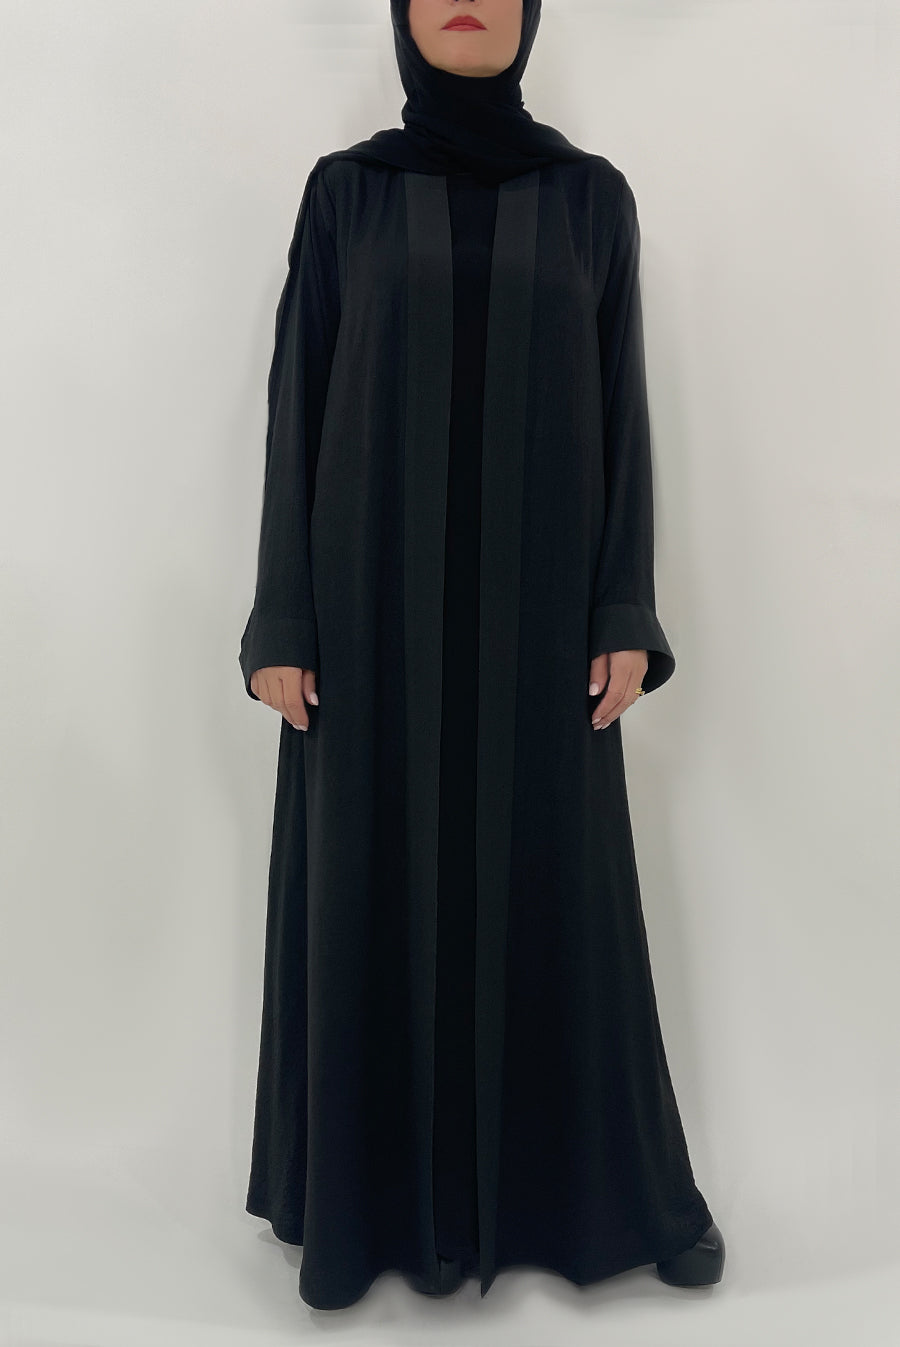 Black Simple Abaya - thowby - dubai abaya